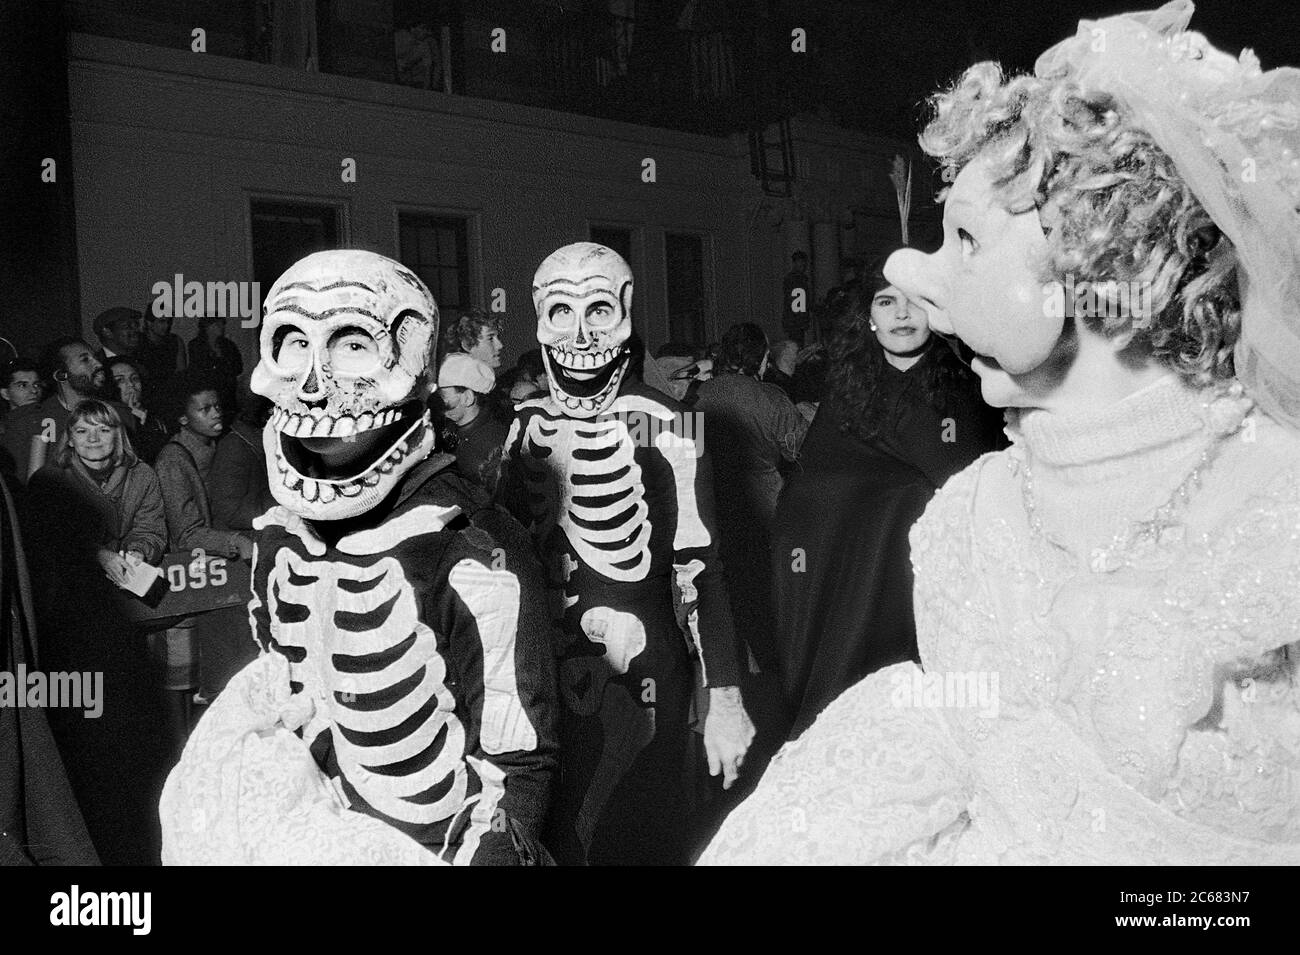 Squelettes au Greenwich Village Halloween Parade, New York City, États-Unis dans les années 1980, photographiés avec le film Black & White la nuit. Banque D'Images